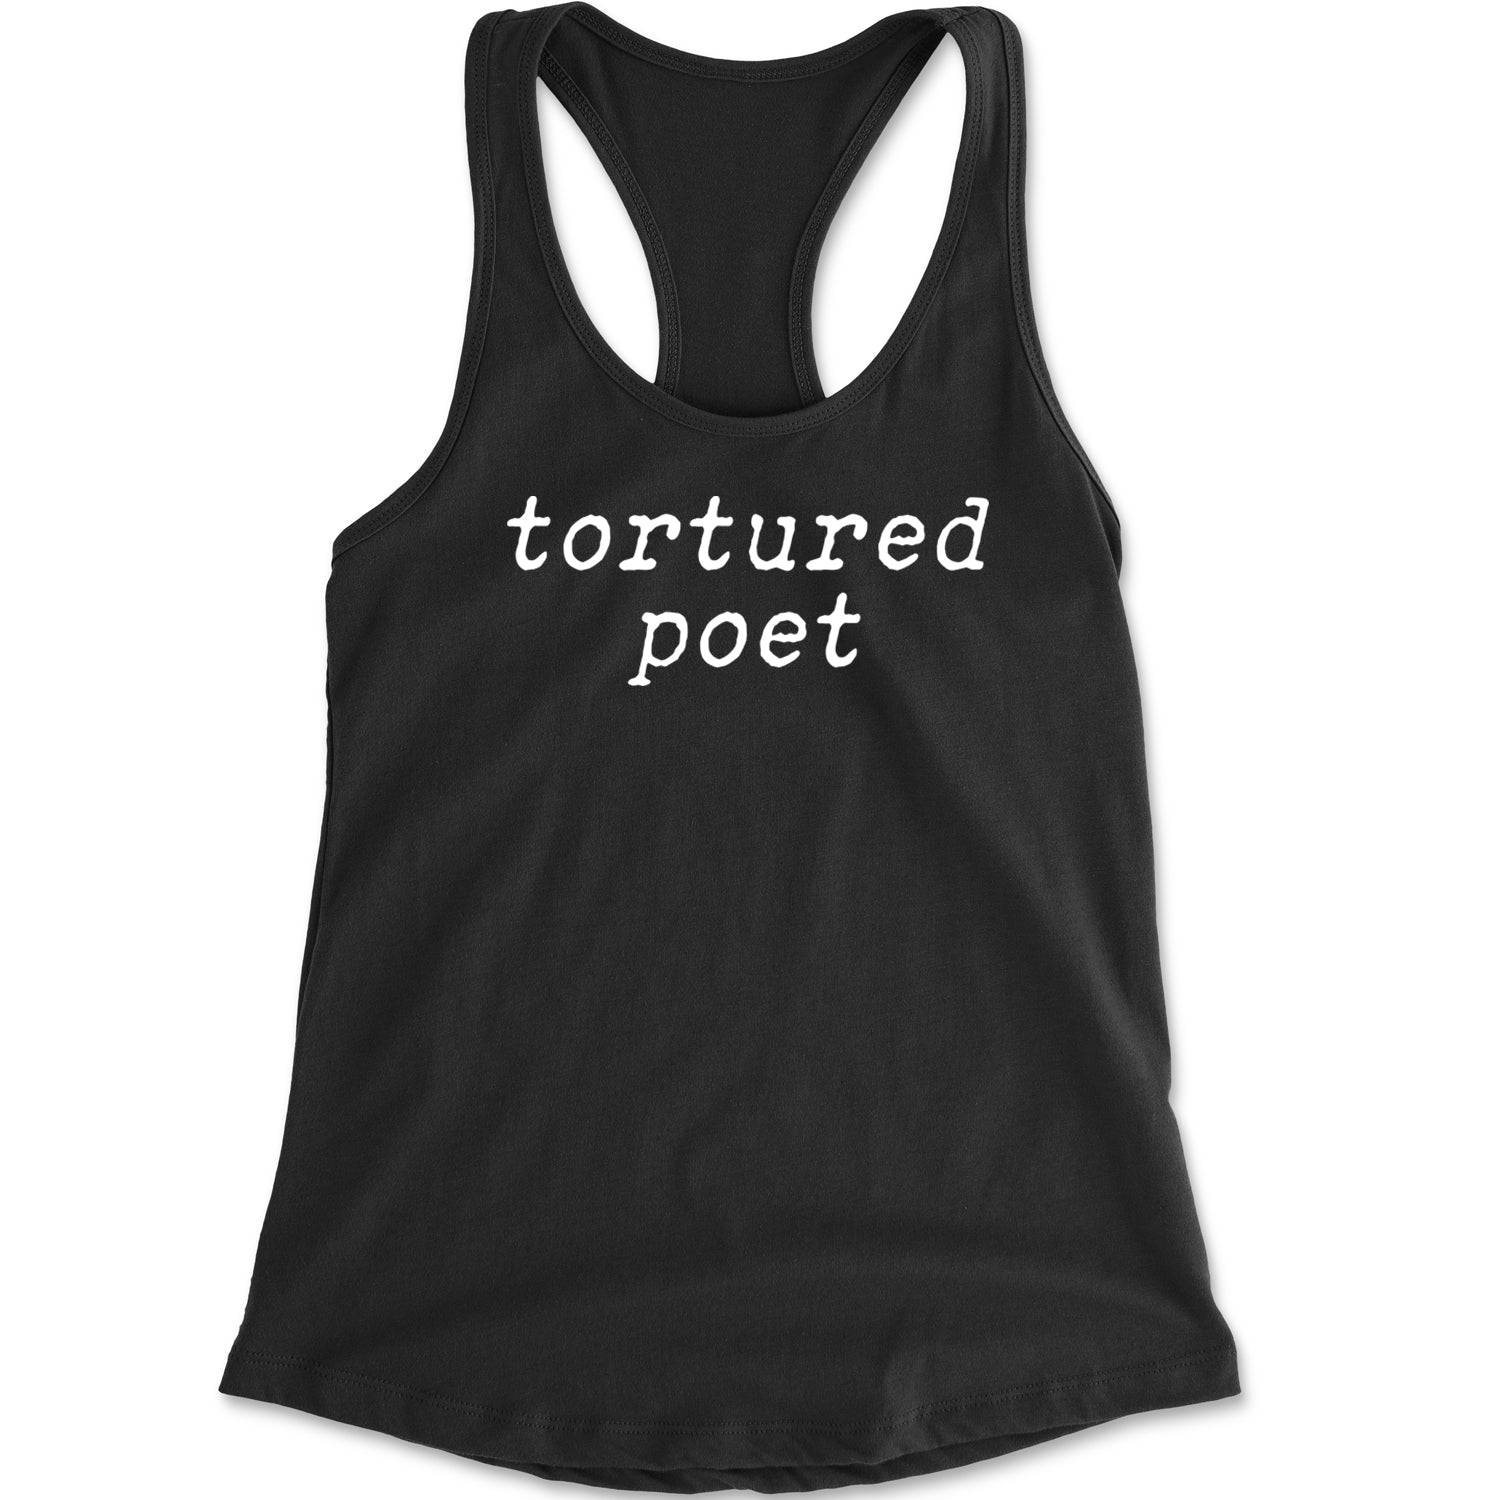 Tortured Poet Chairman Racerback Tank Top for Women